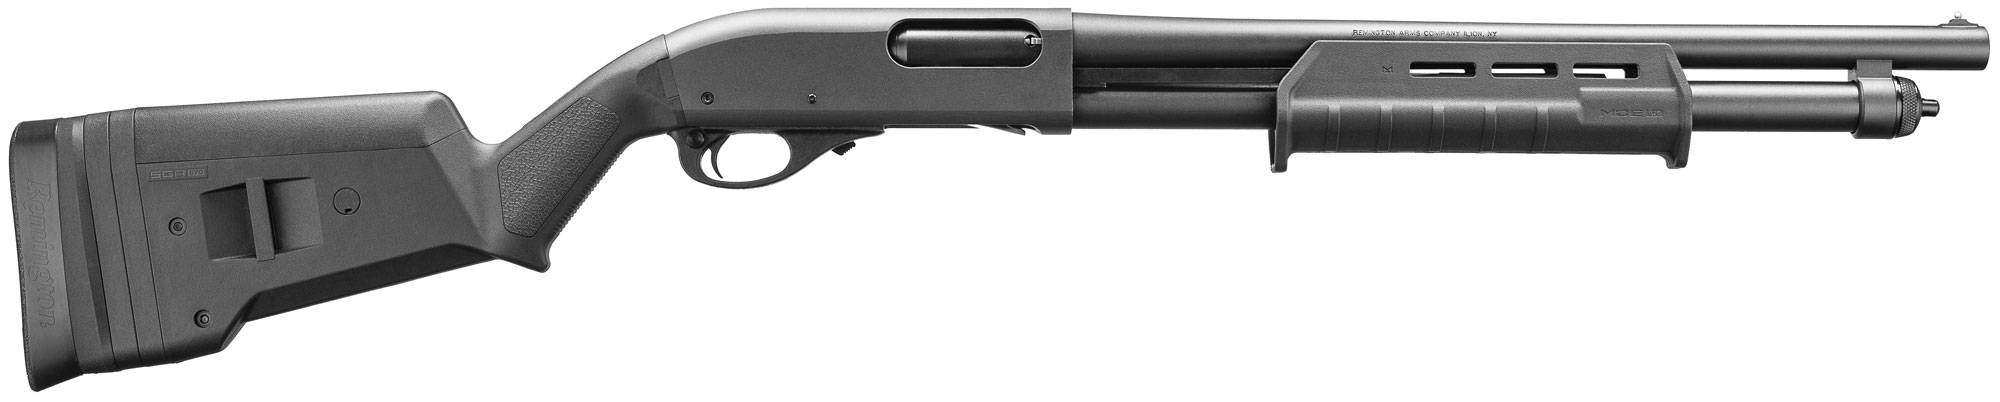 Remington 870: история создания, конструкция, модификации, достоинства и недостатки